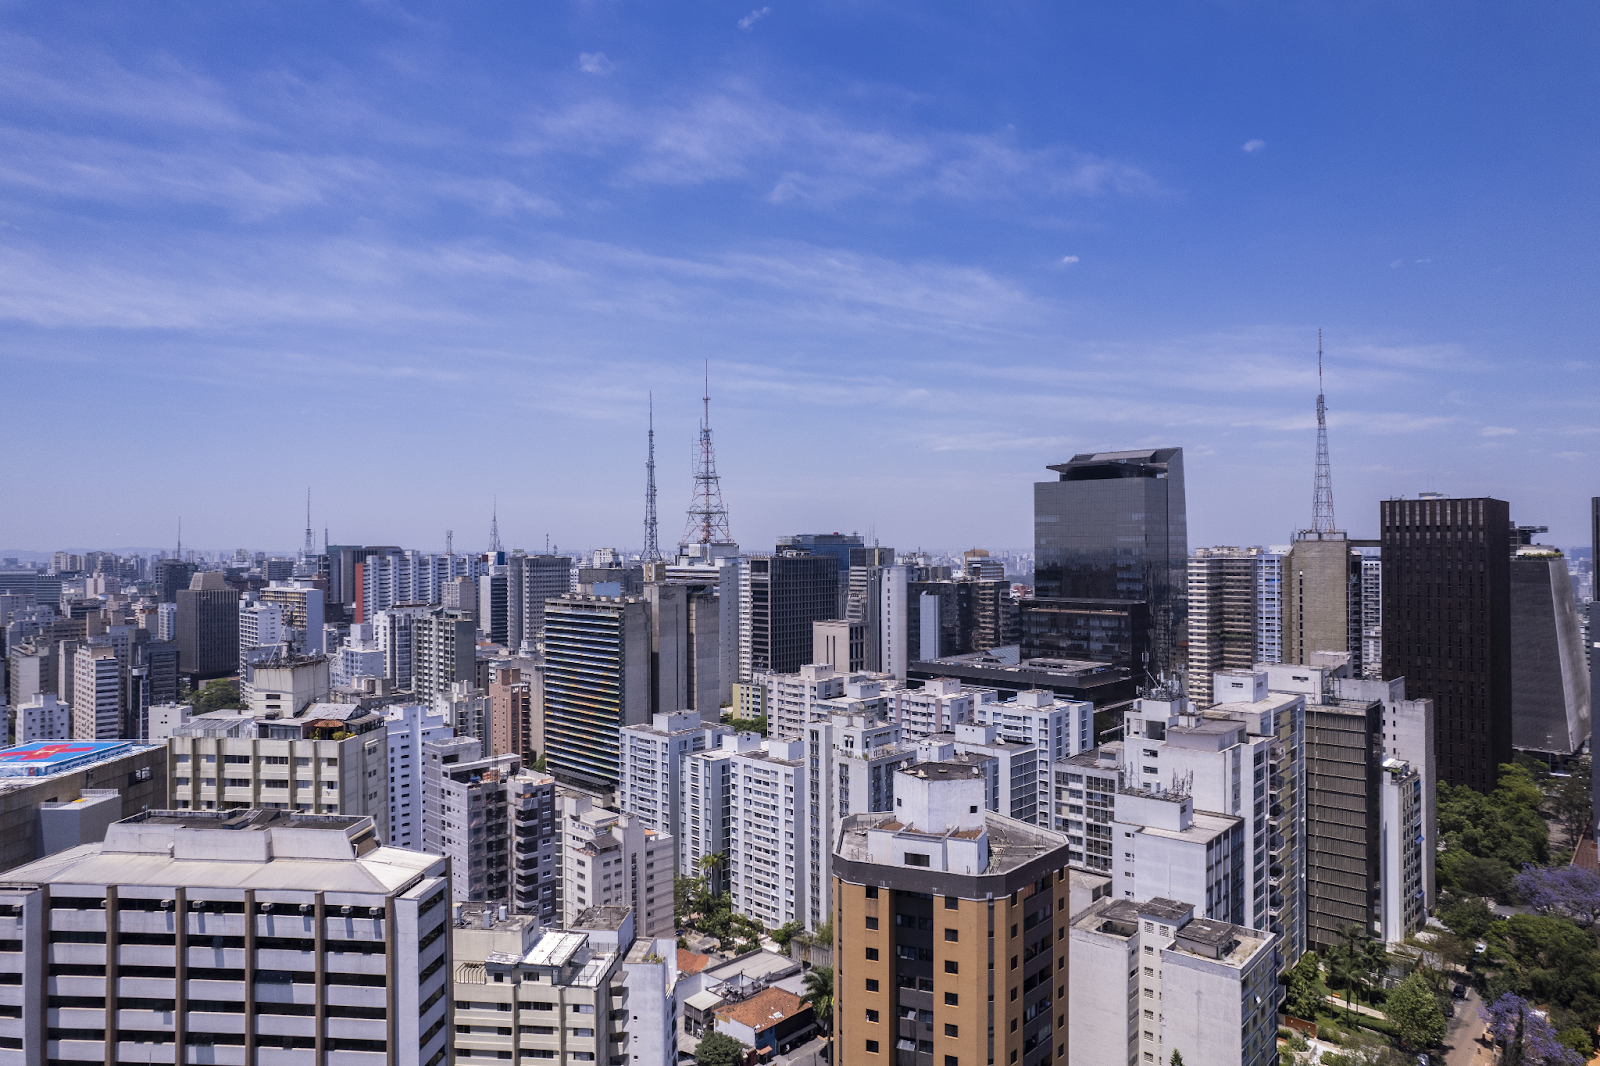 Foto panorâmica dos bairros de São Paulo, com um céu azul e muitos prédios